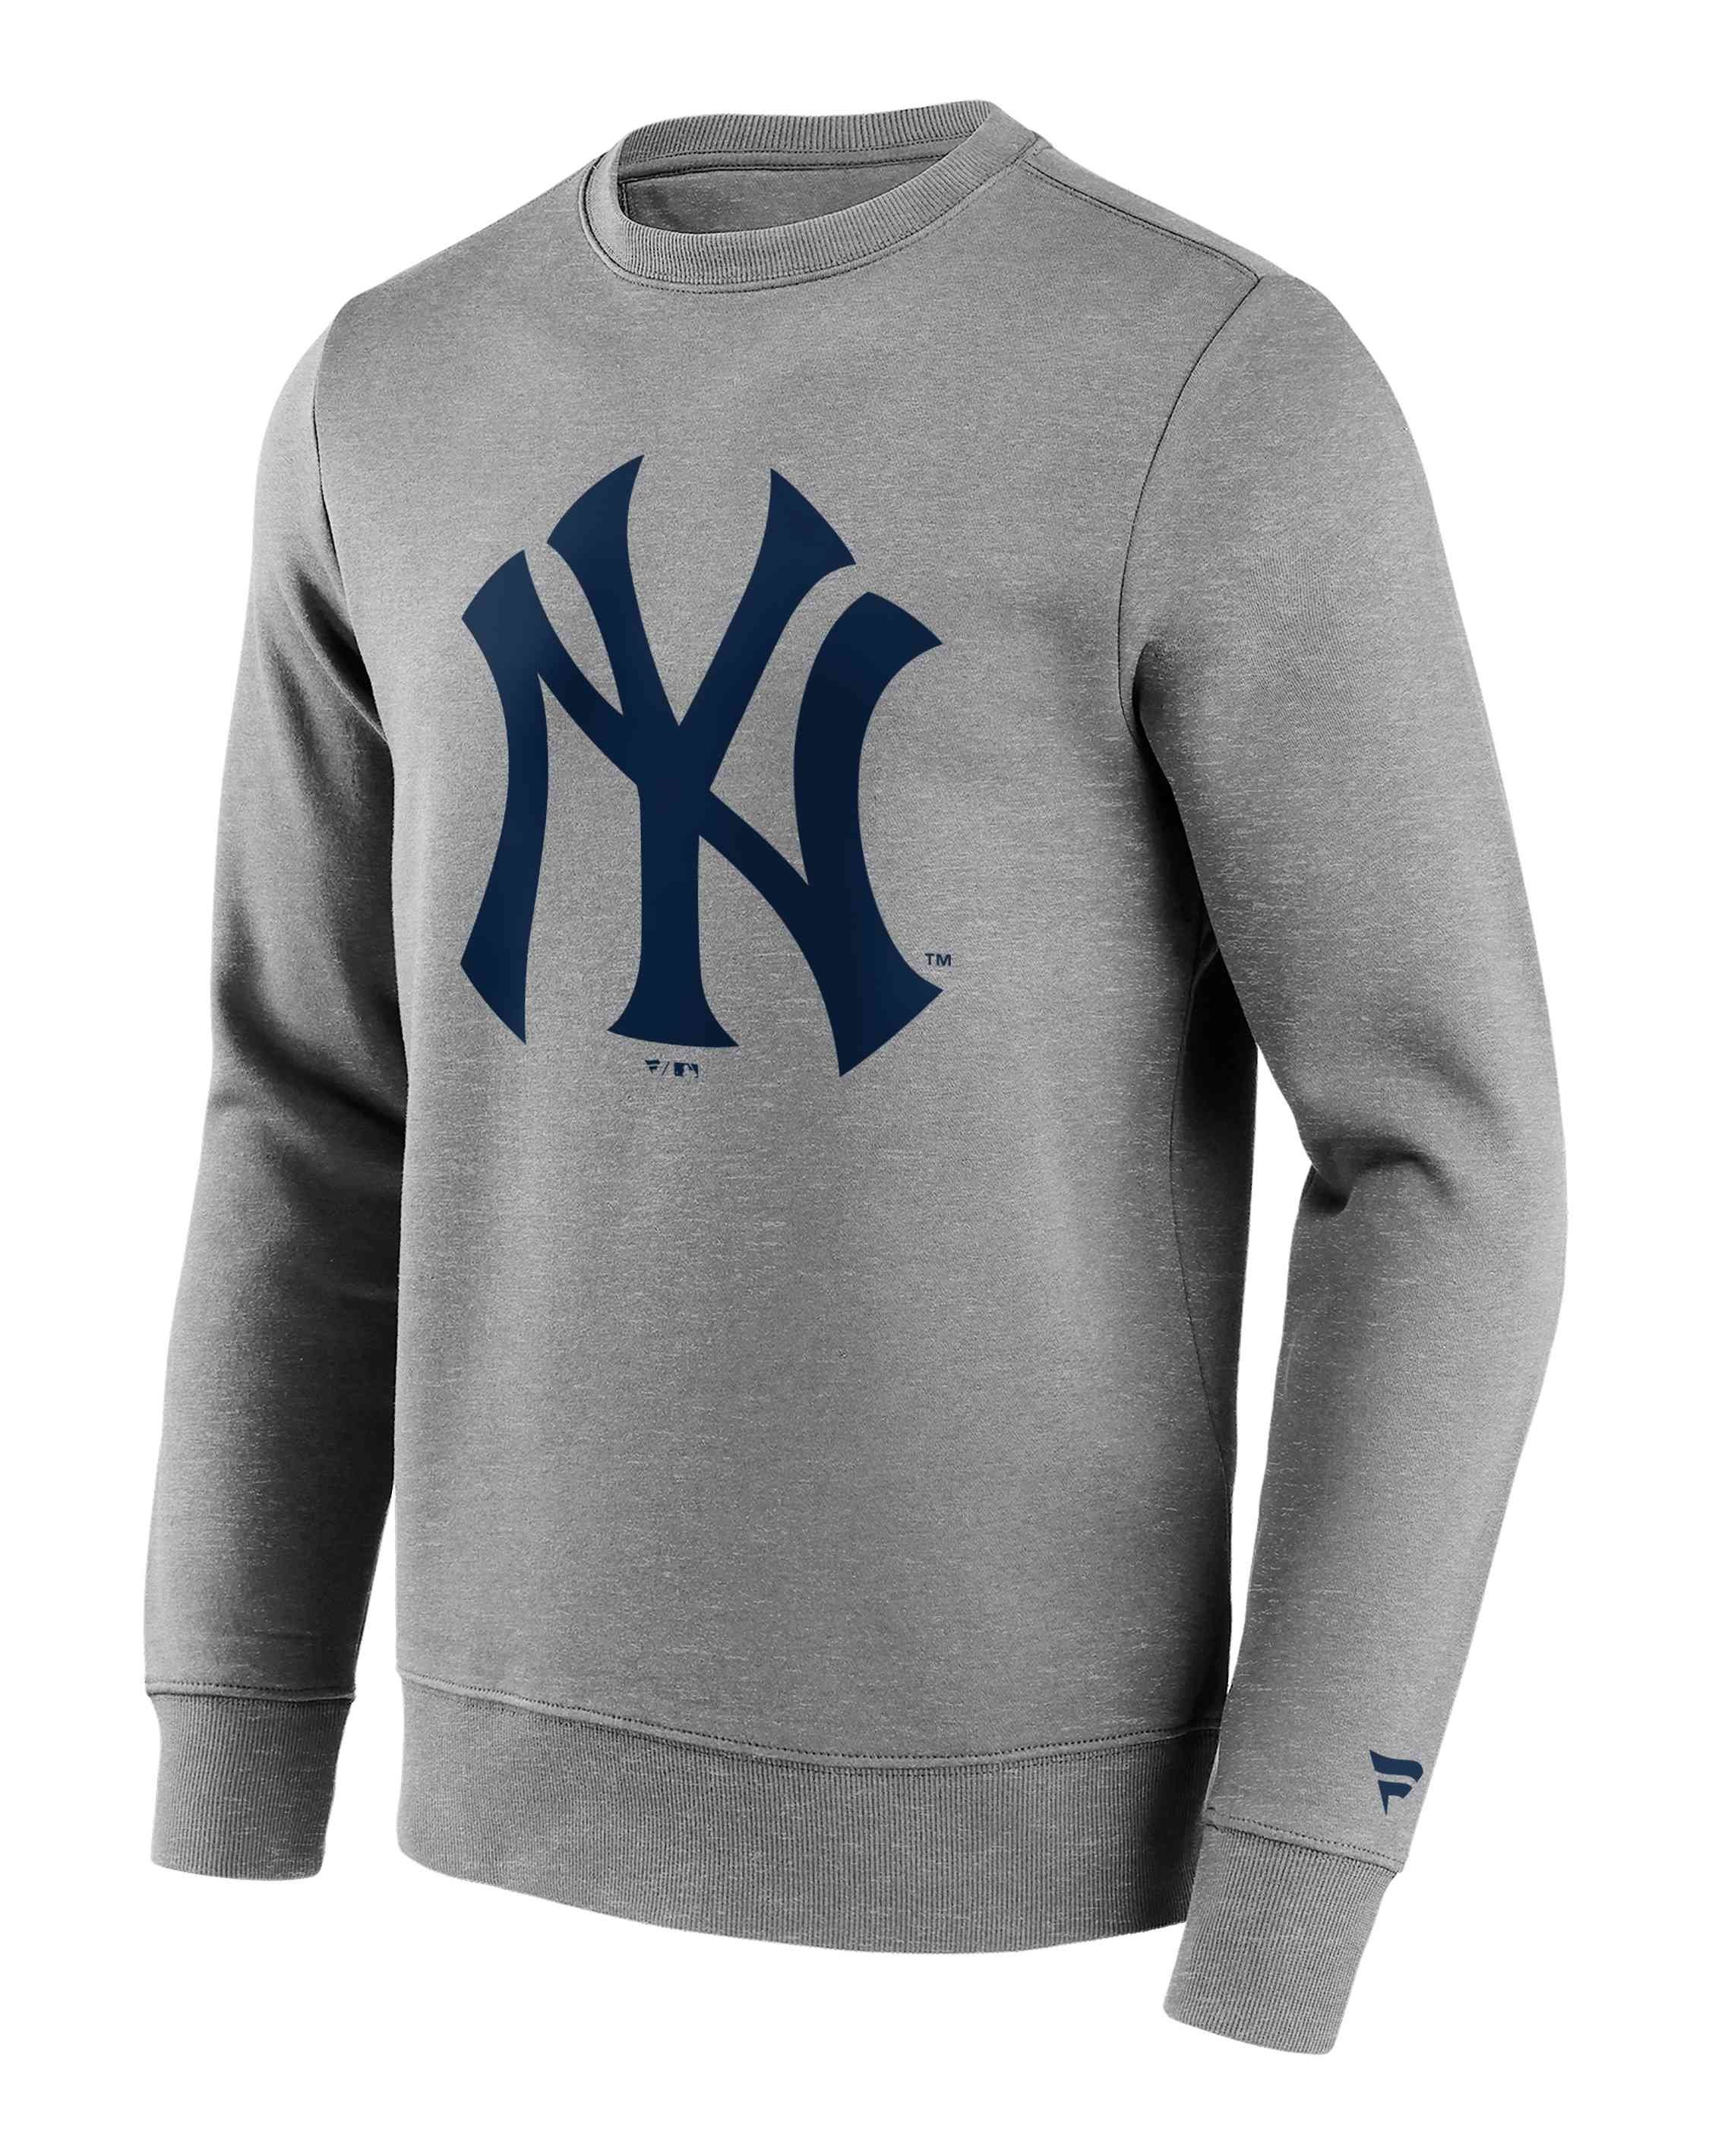 Fanatics Sweatshirt MLB New Yankees York Primary Crew Graphic Logo